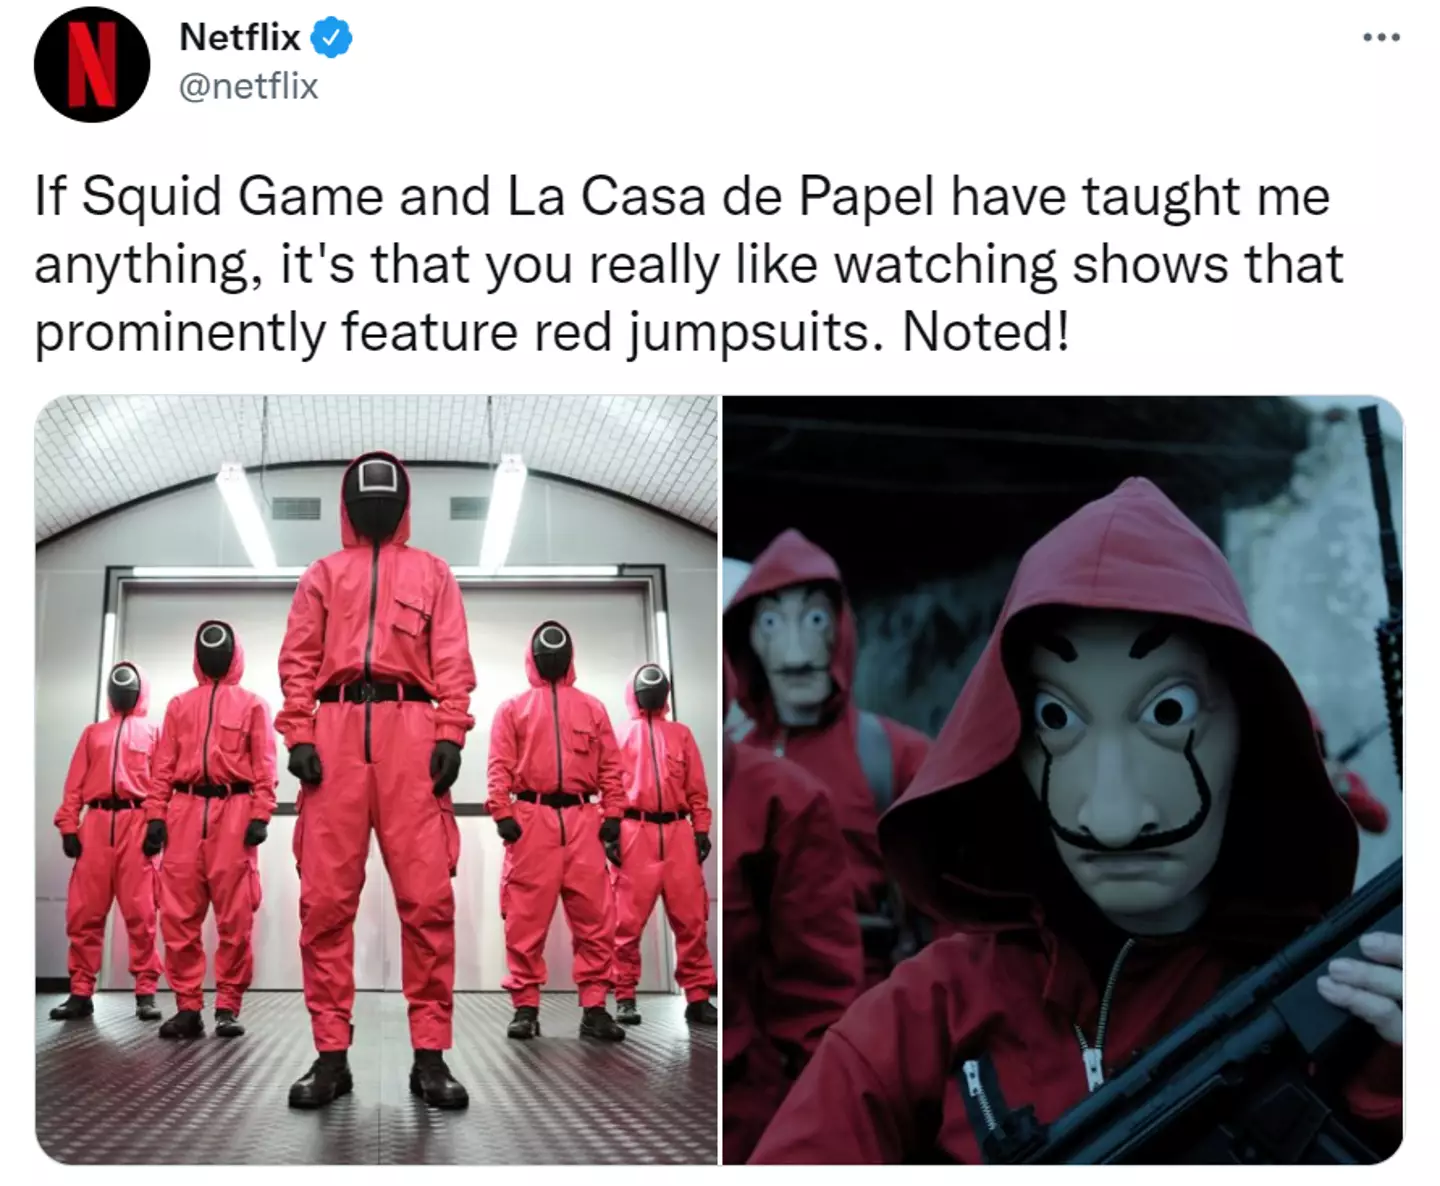 Netflix may be onto a winning formula here (